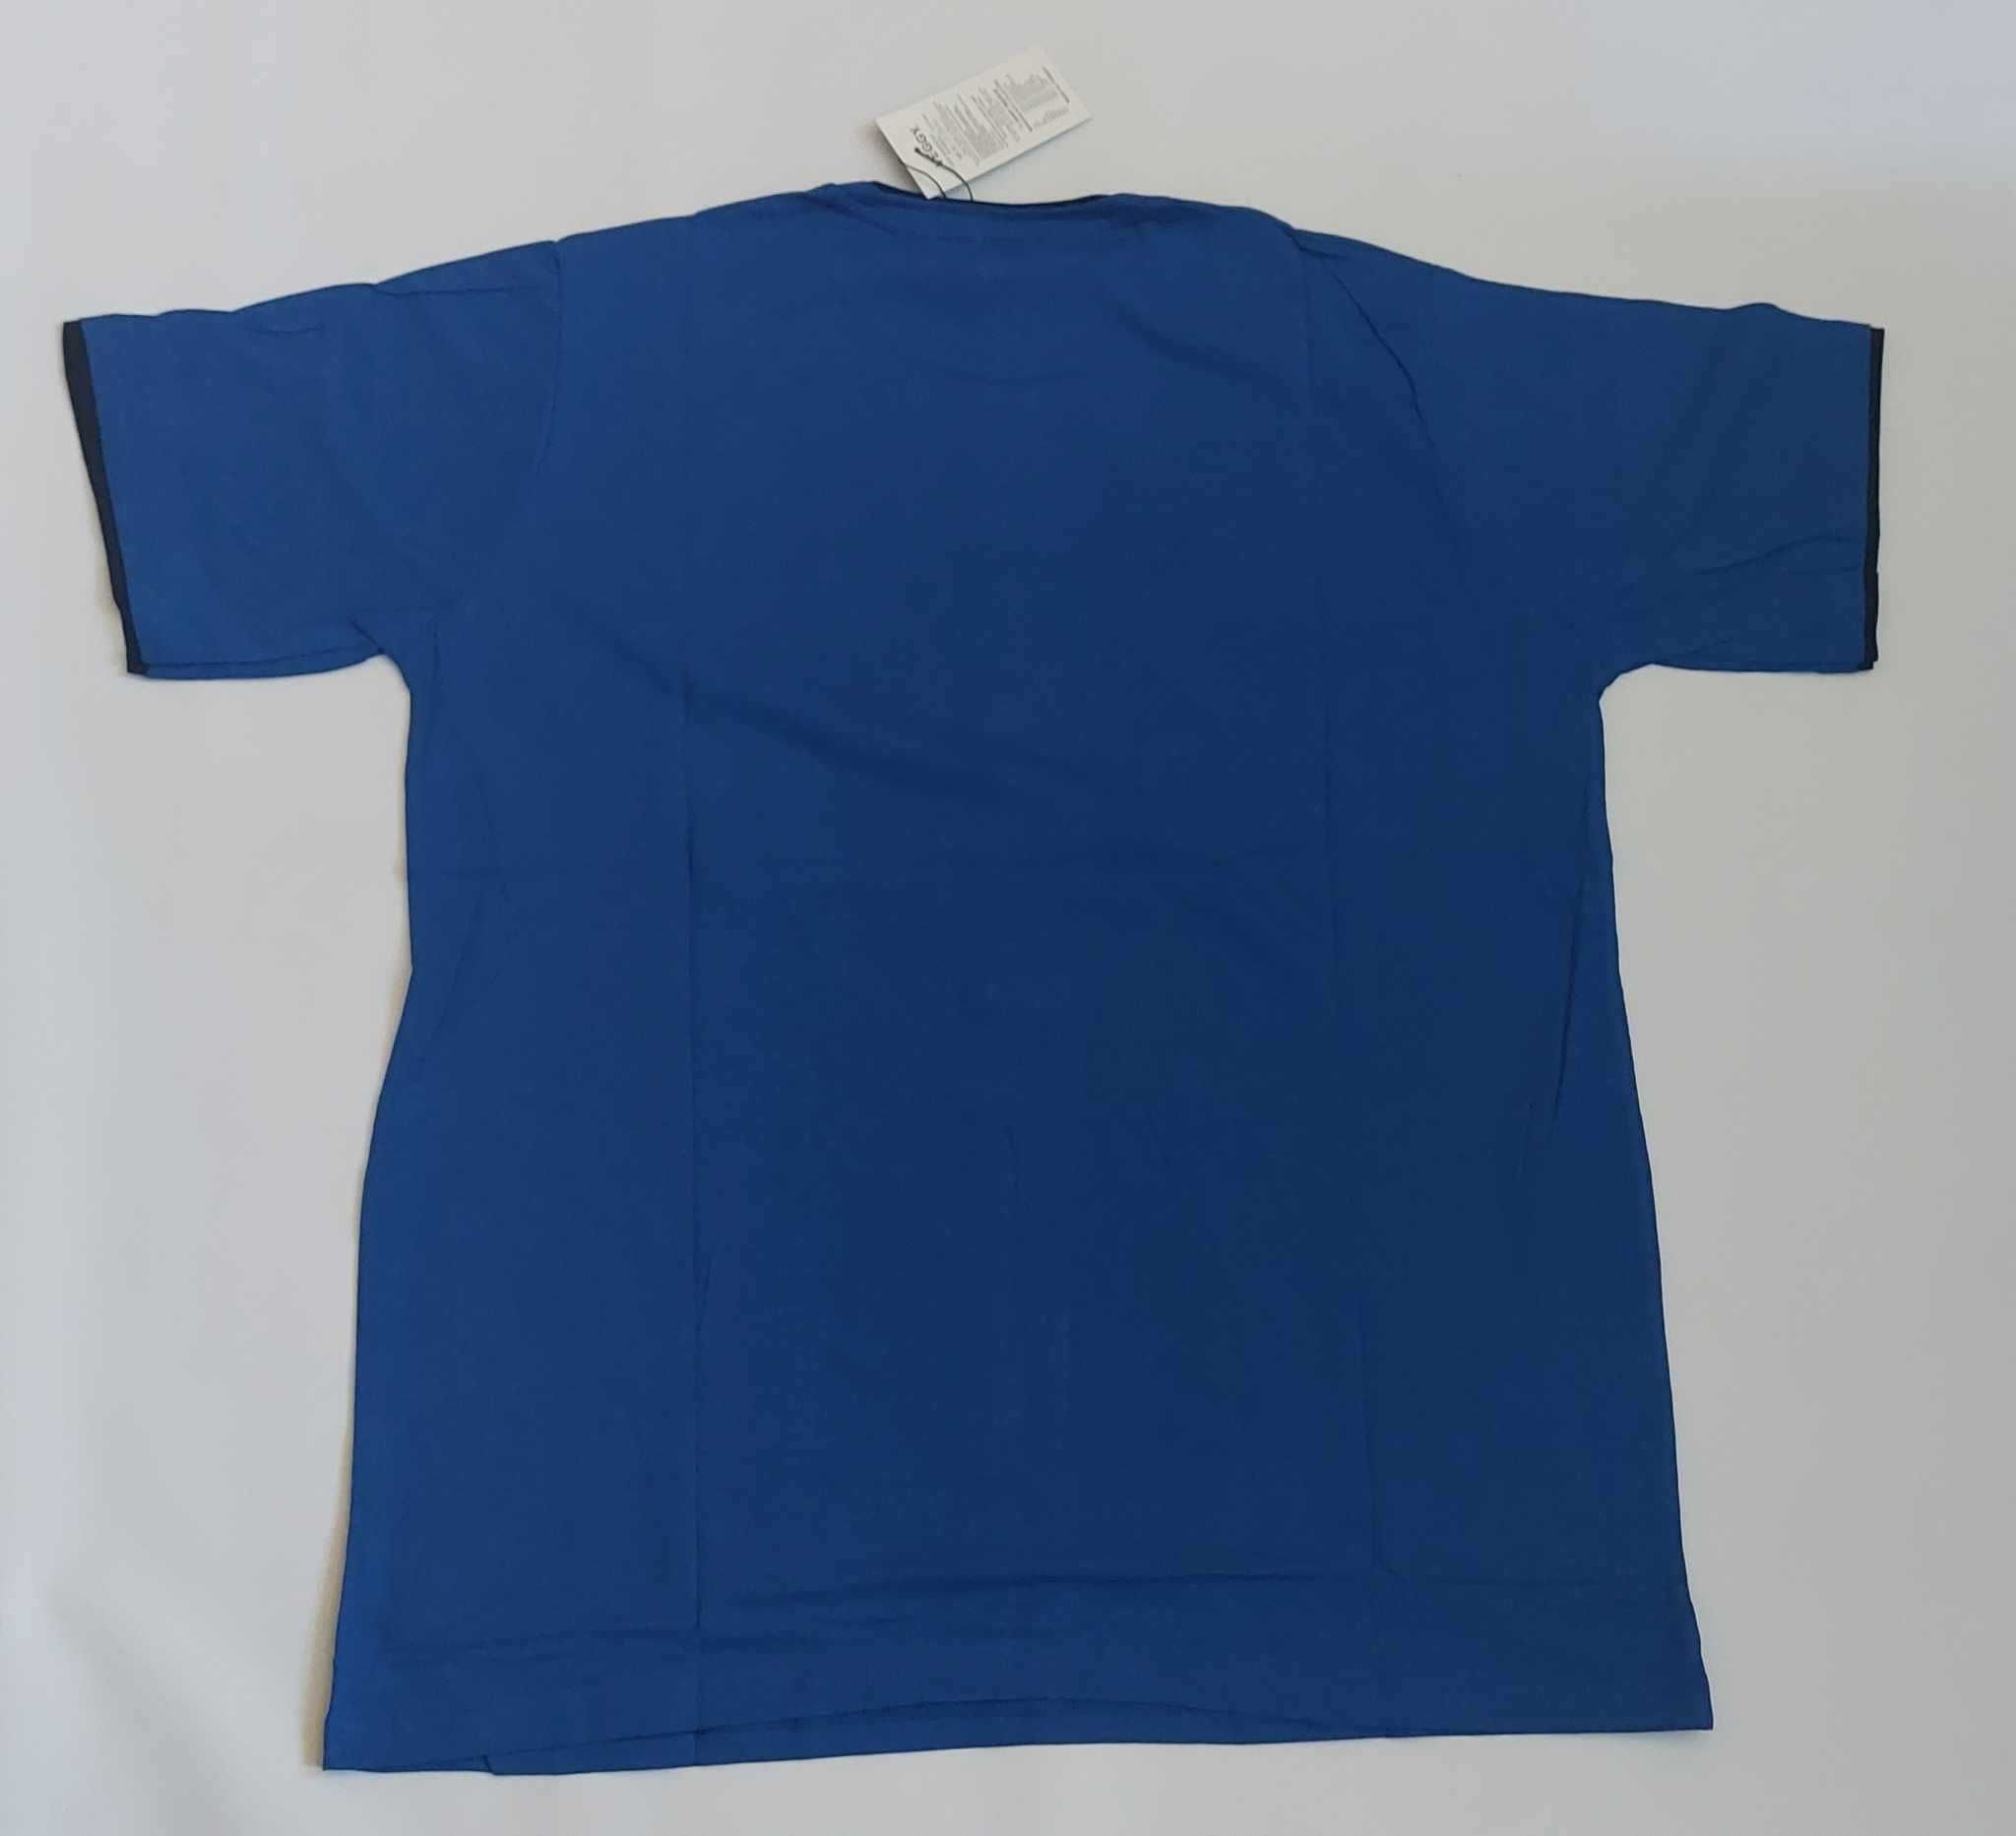 Koszulka męska t-shirt męski turecki bawełna VEGGY r. 4 XL obwód 132cm